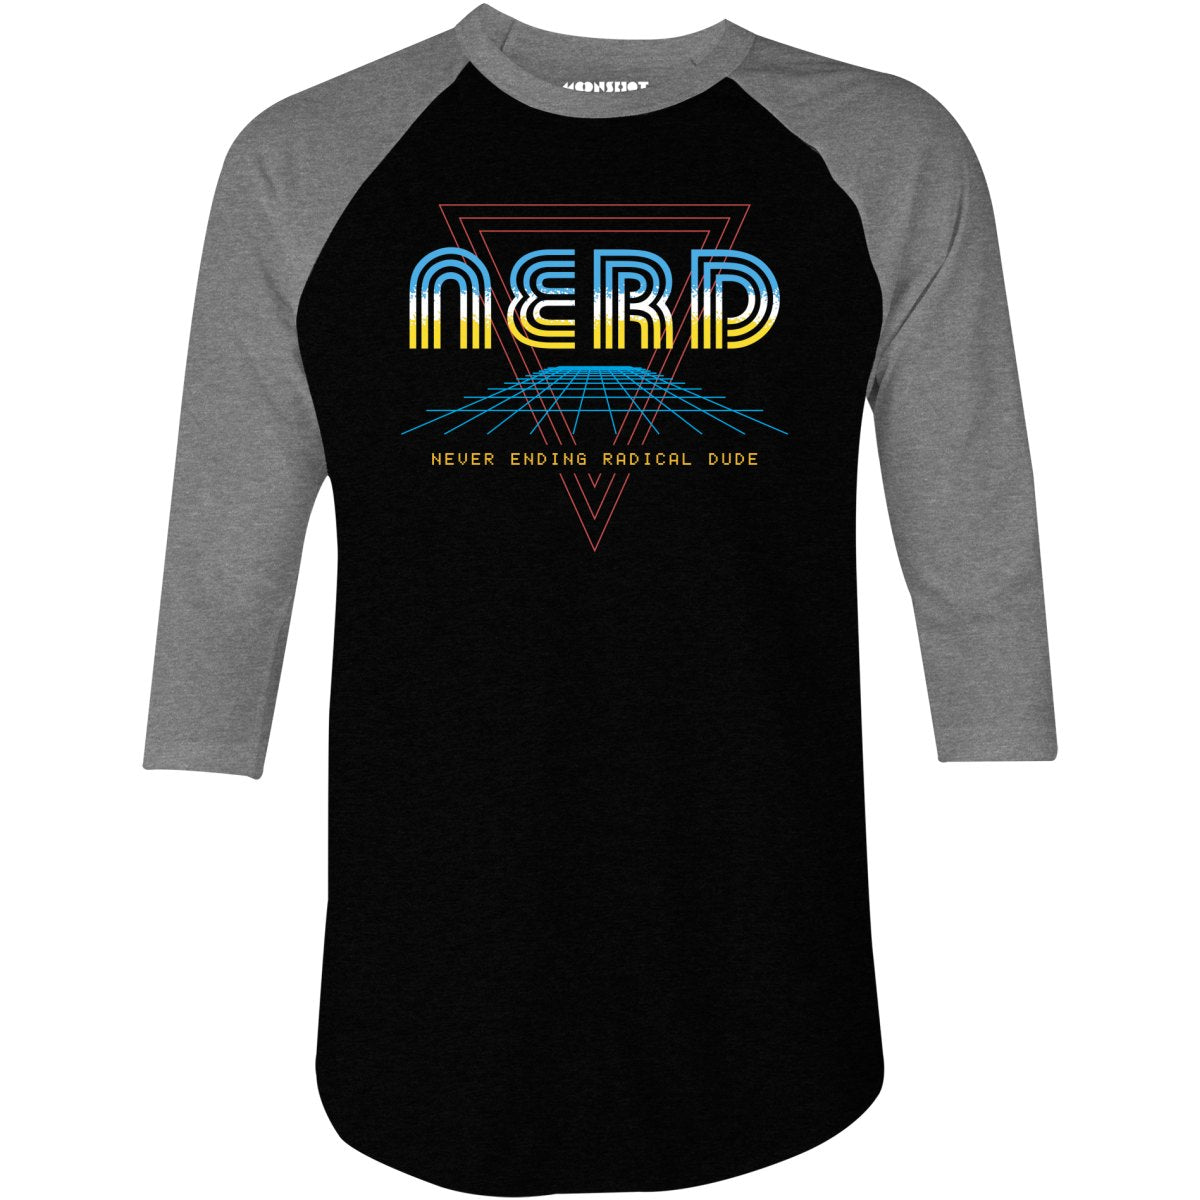 Nerd Never Ending Radical Dude - 3/4 Sleeve Raglan T-Shirt